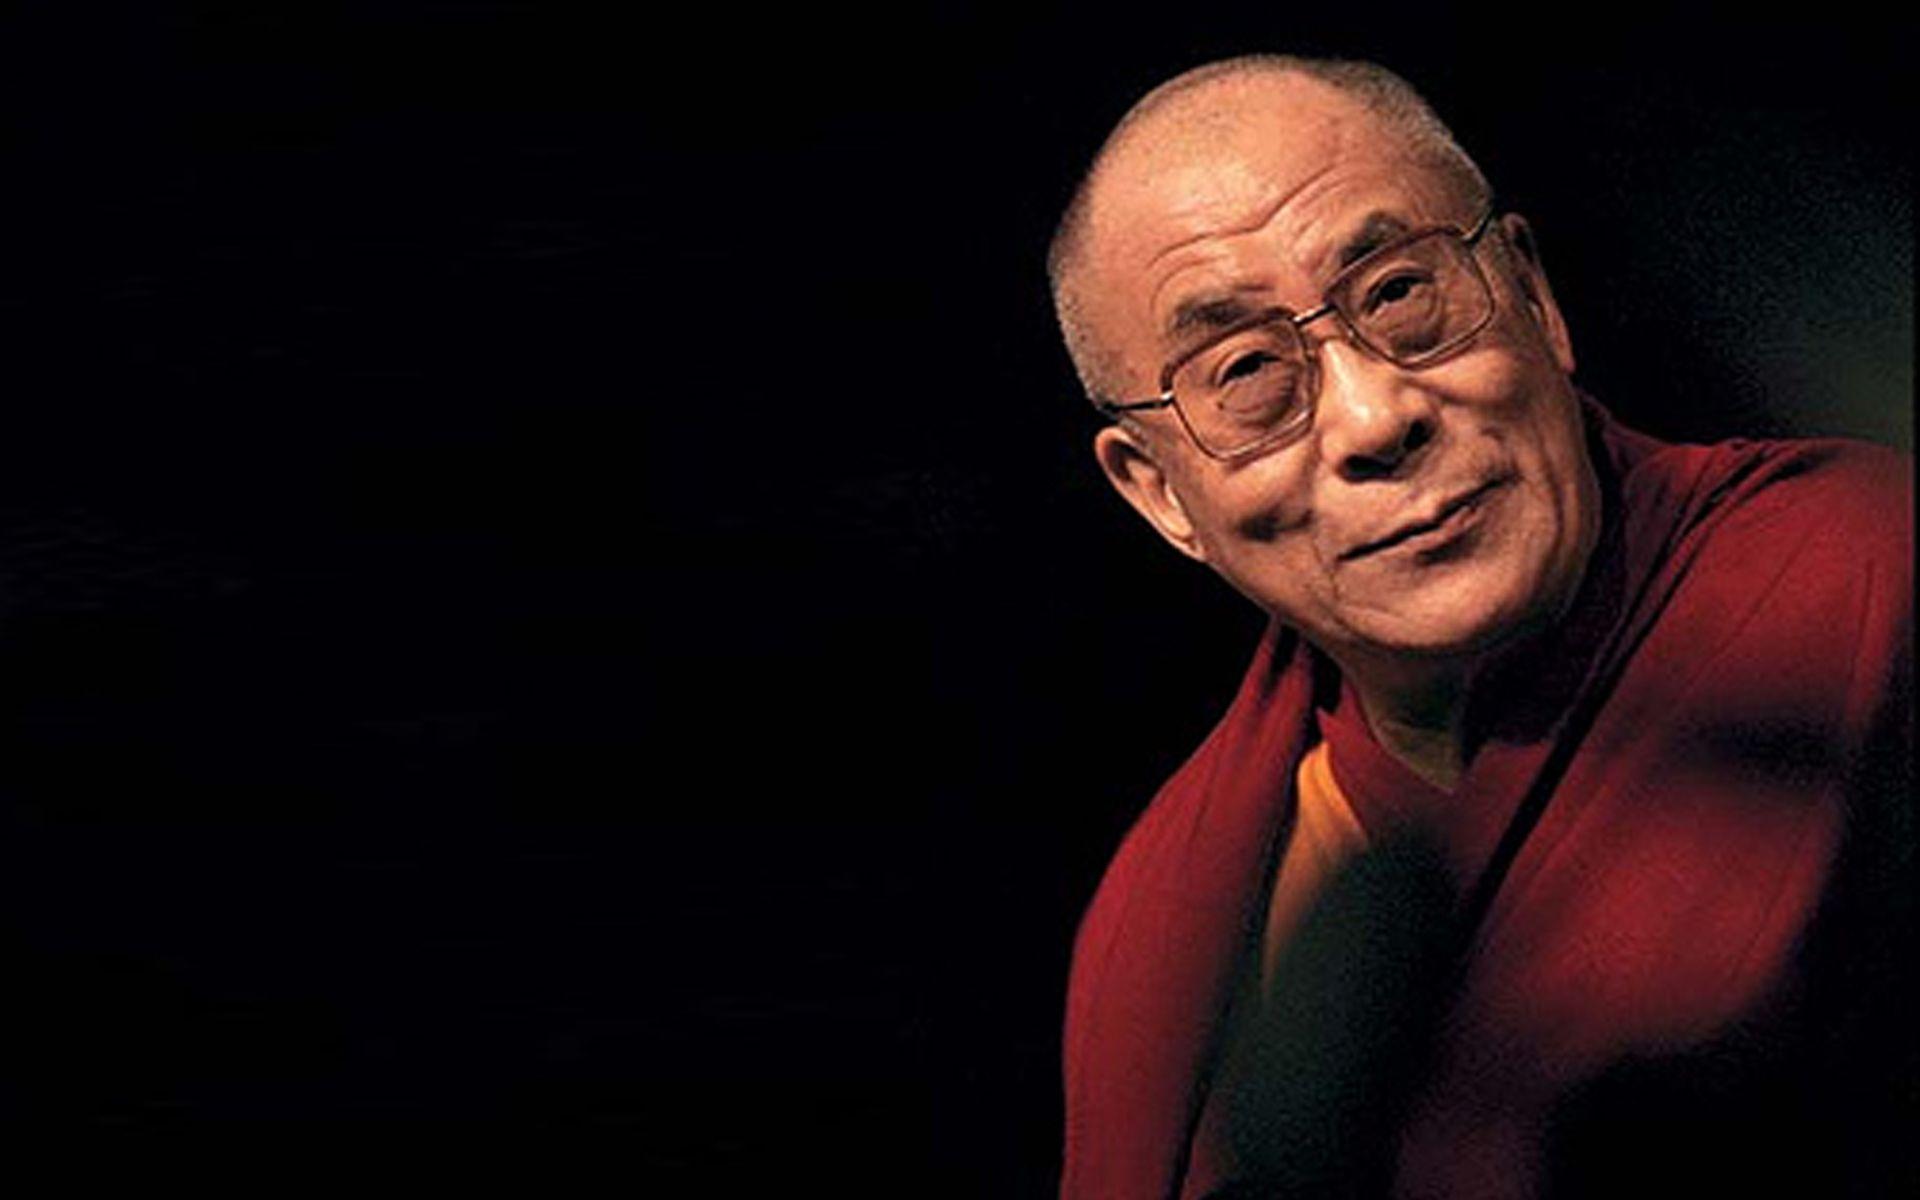 dalai lama web site